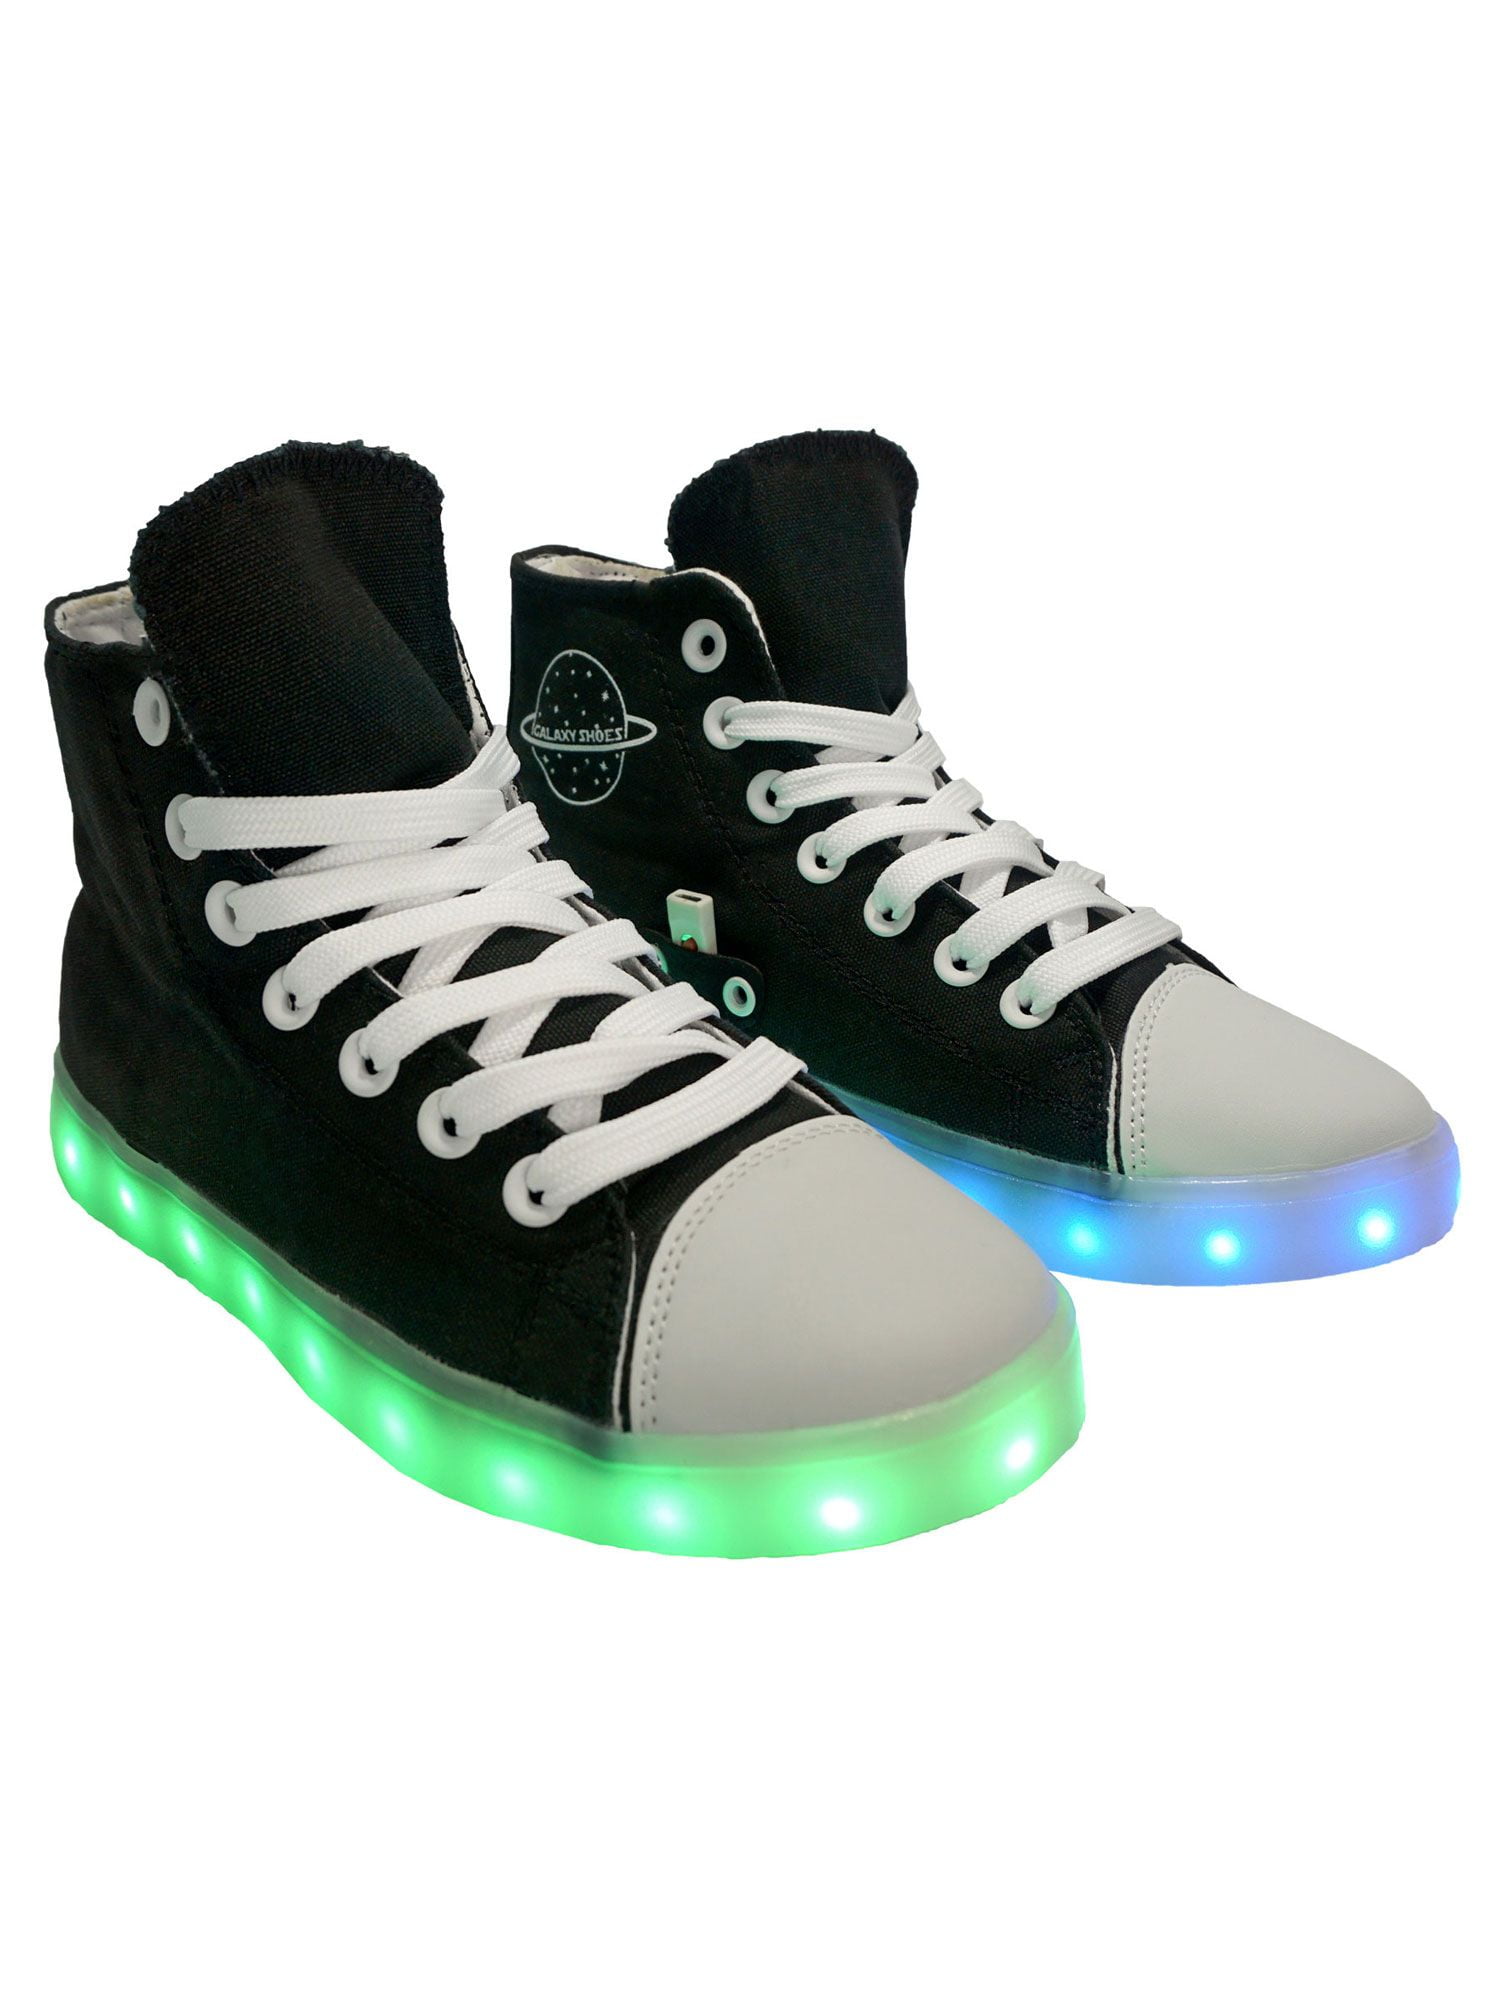 Gedetailleerd Besmettelijk Inheems Family Smiles LED Light Up Sneakers Hightop Women Black Shoes US 6.5 / EU  37 - Walmart.com